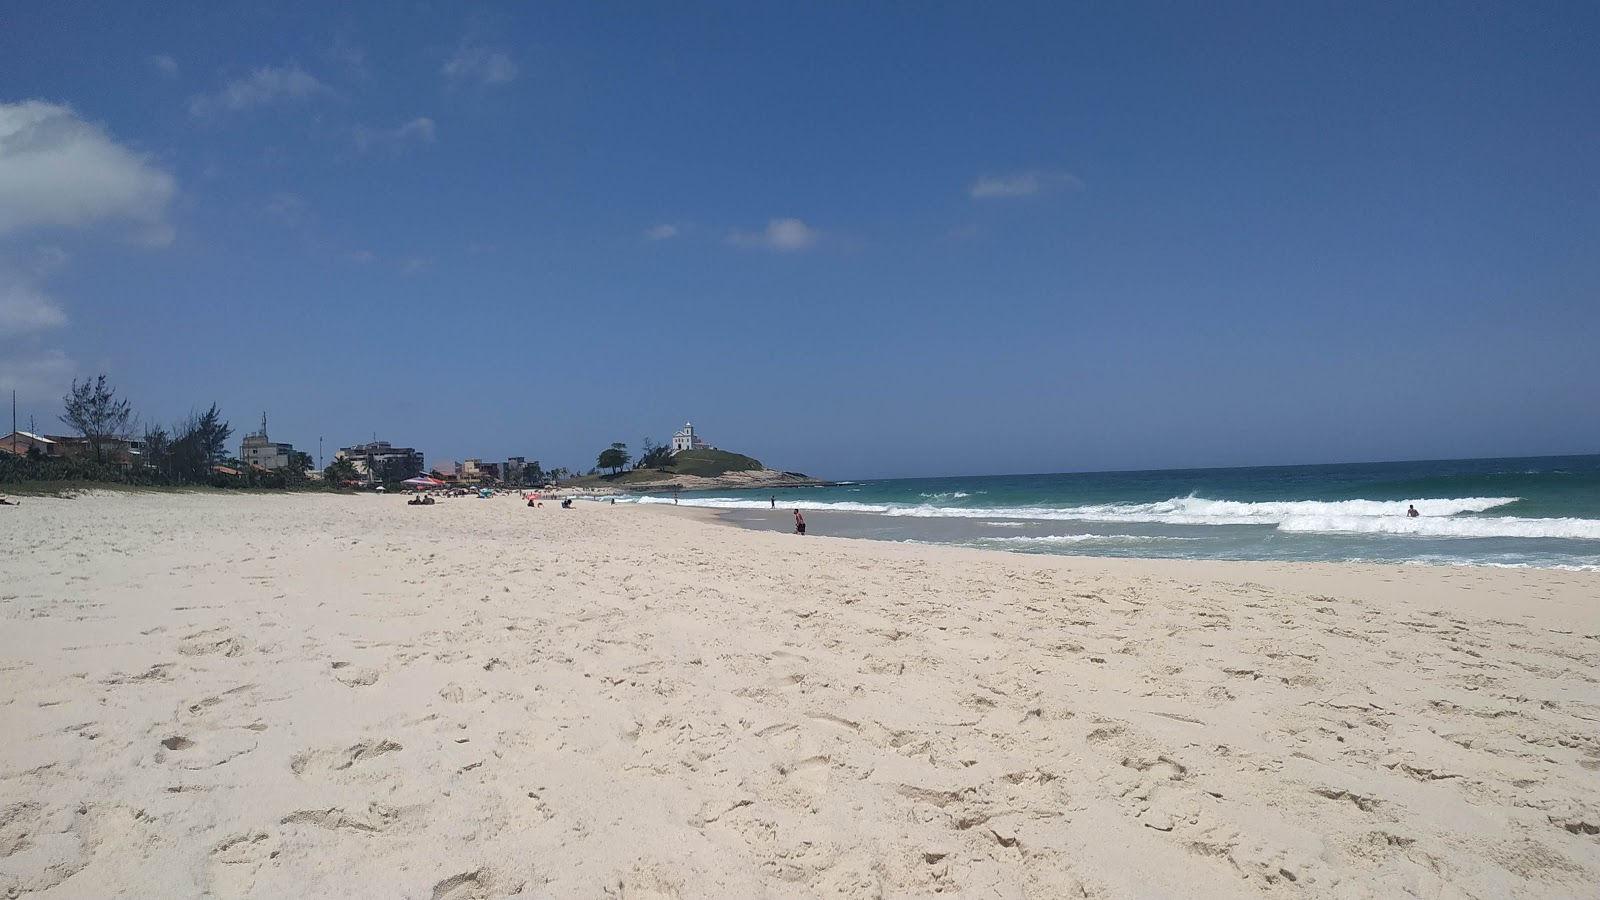 Praia da Vila'in fotoğrafı parlak ince kum yüzey ile